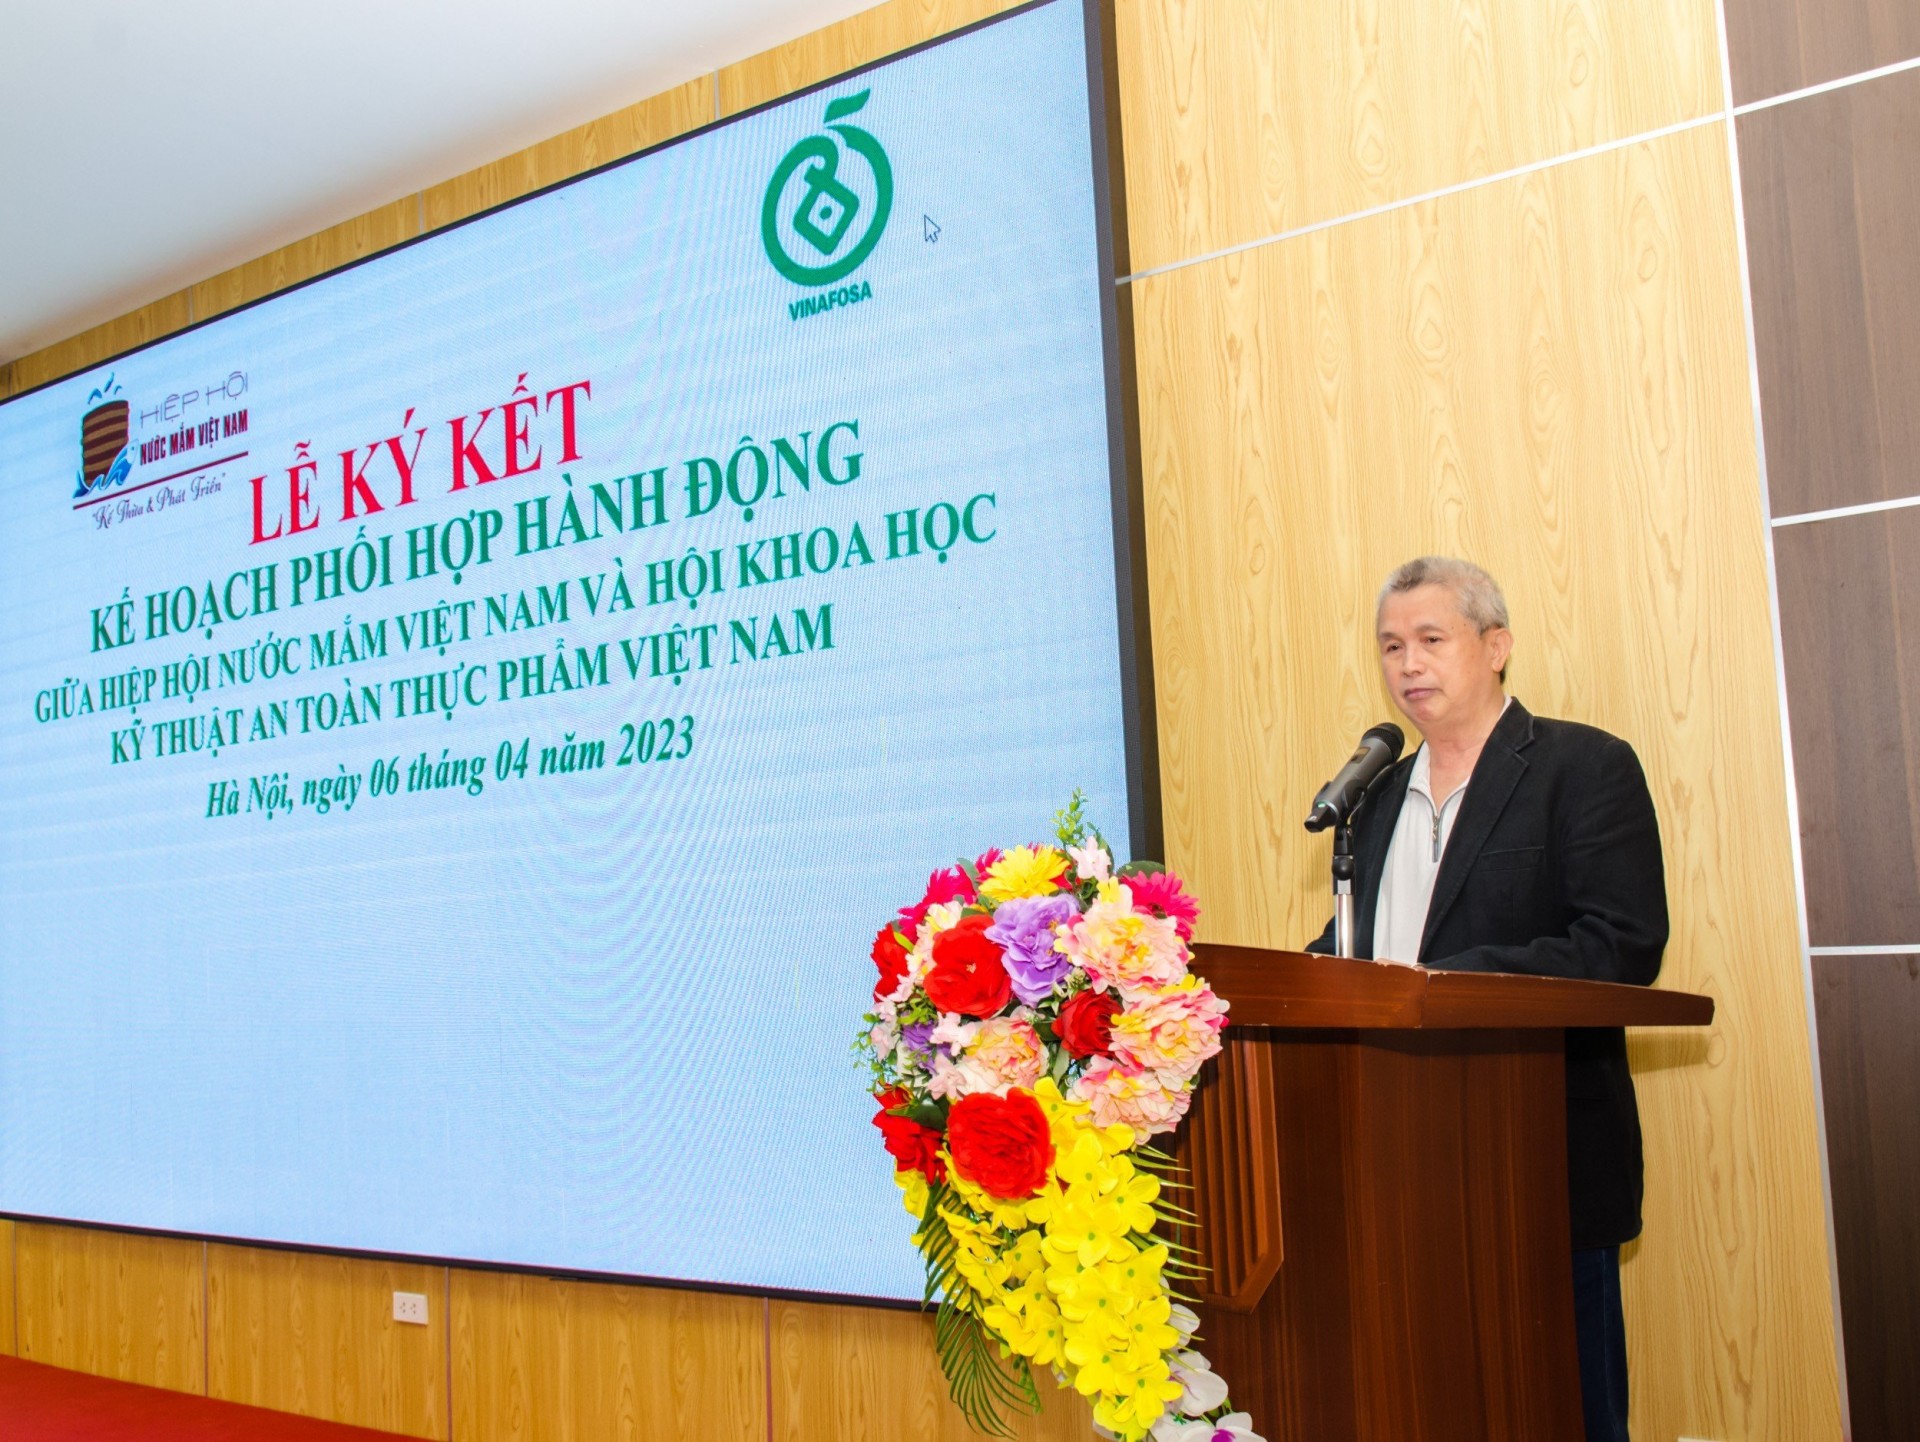 PGS.TS. Trần Đáng - Chủ tịch Hiệp Hội nước mắm Việt Nam phát biểu tại buổi lễ